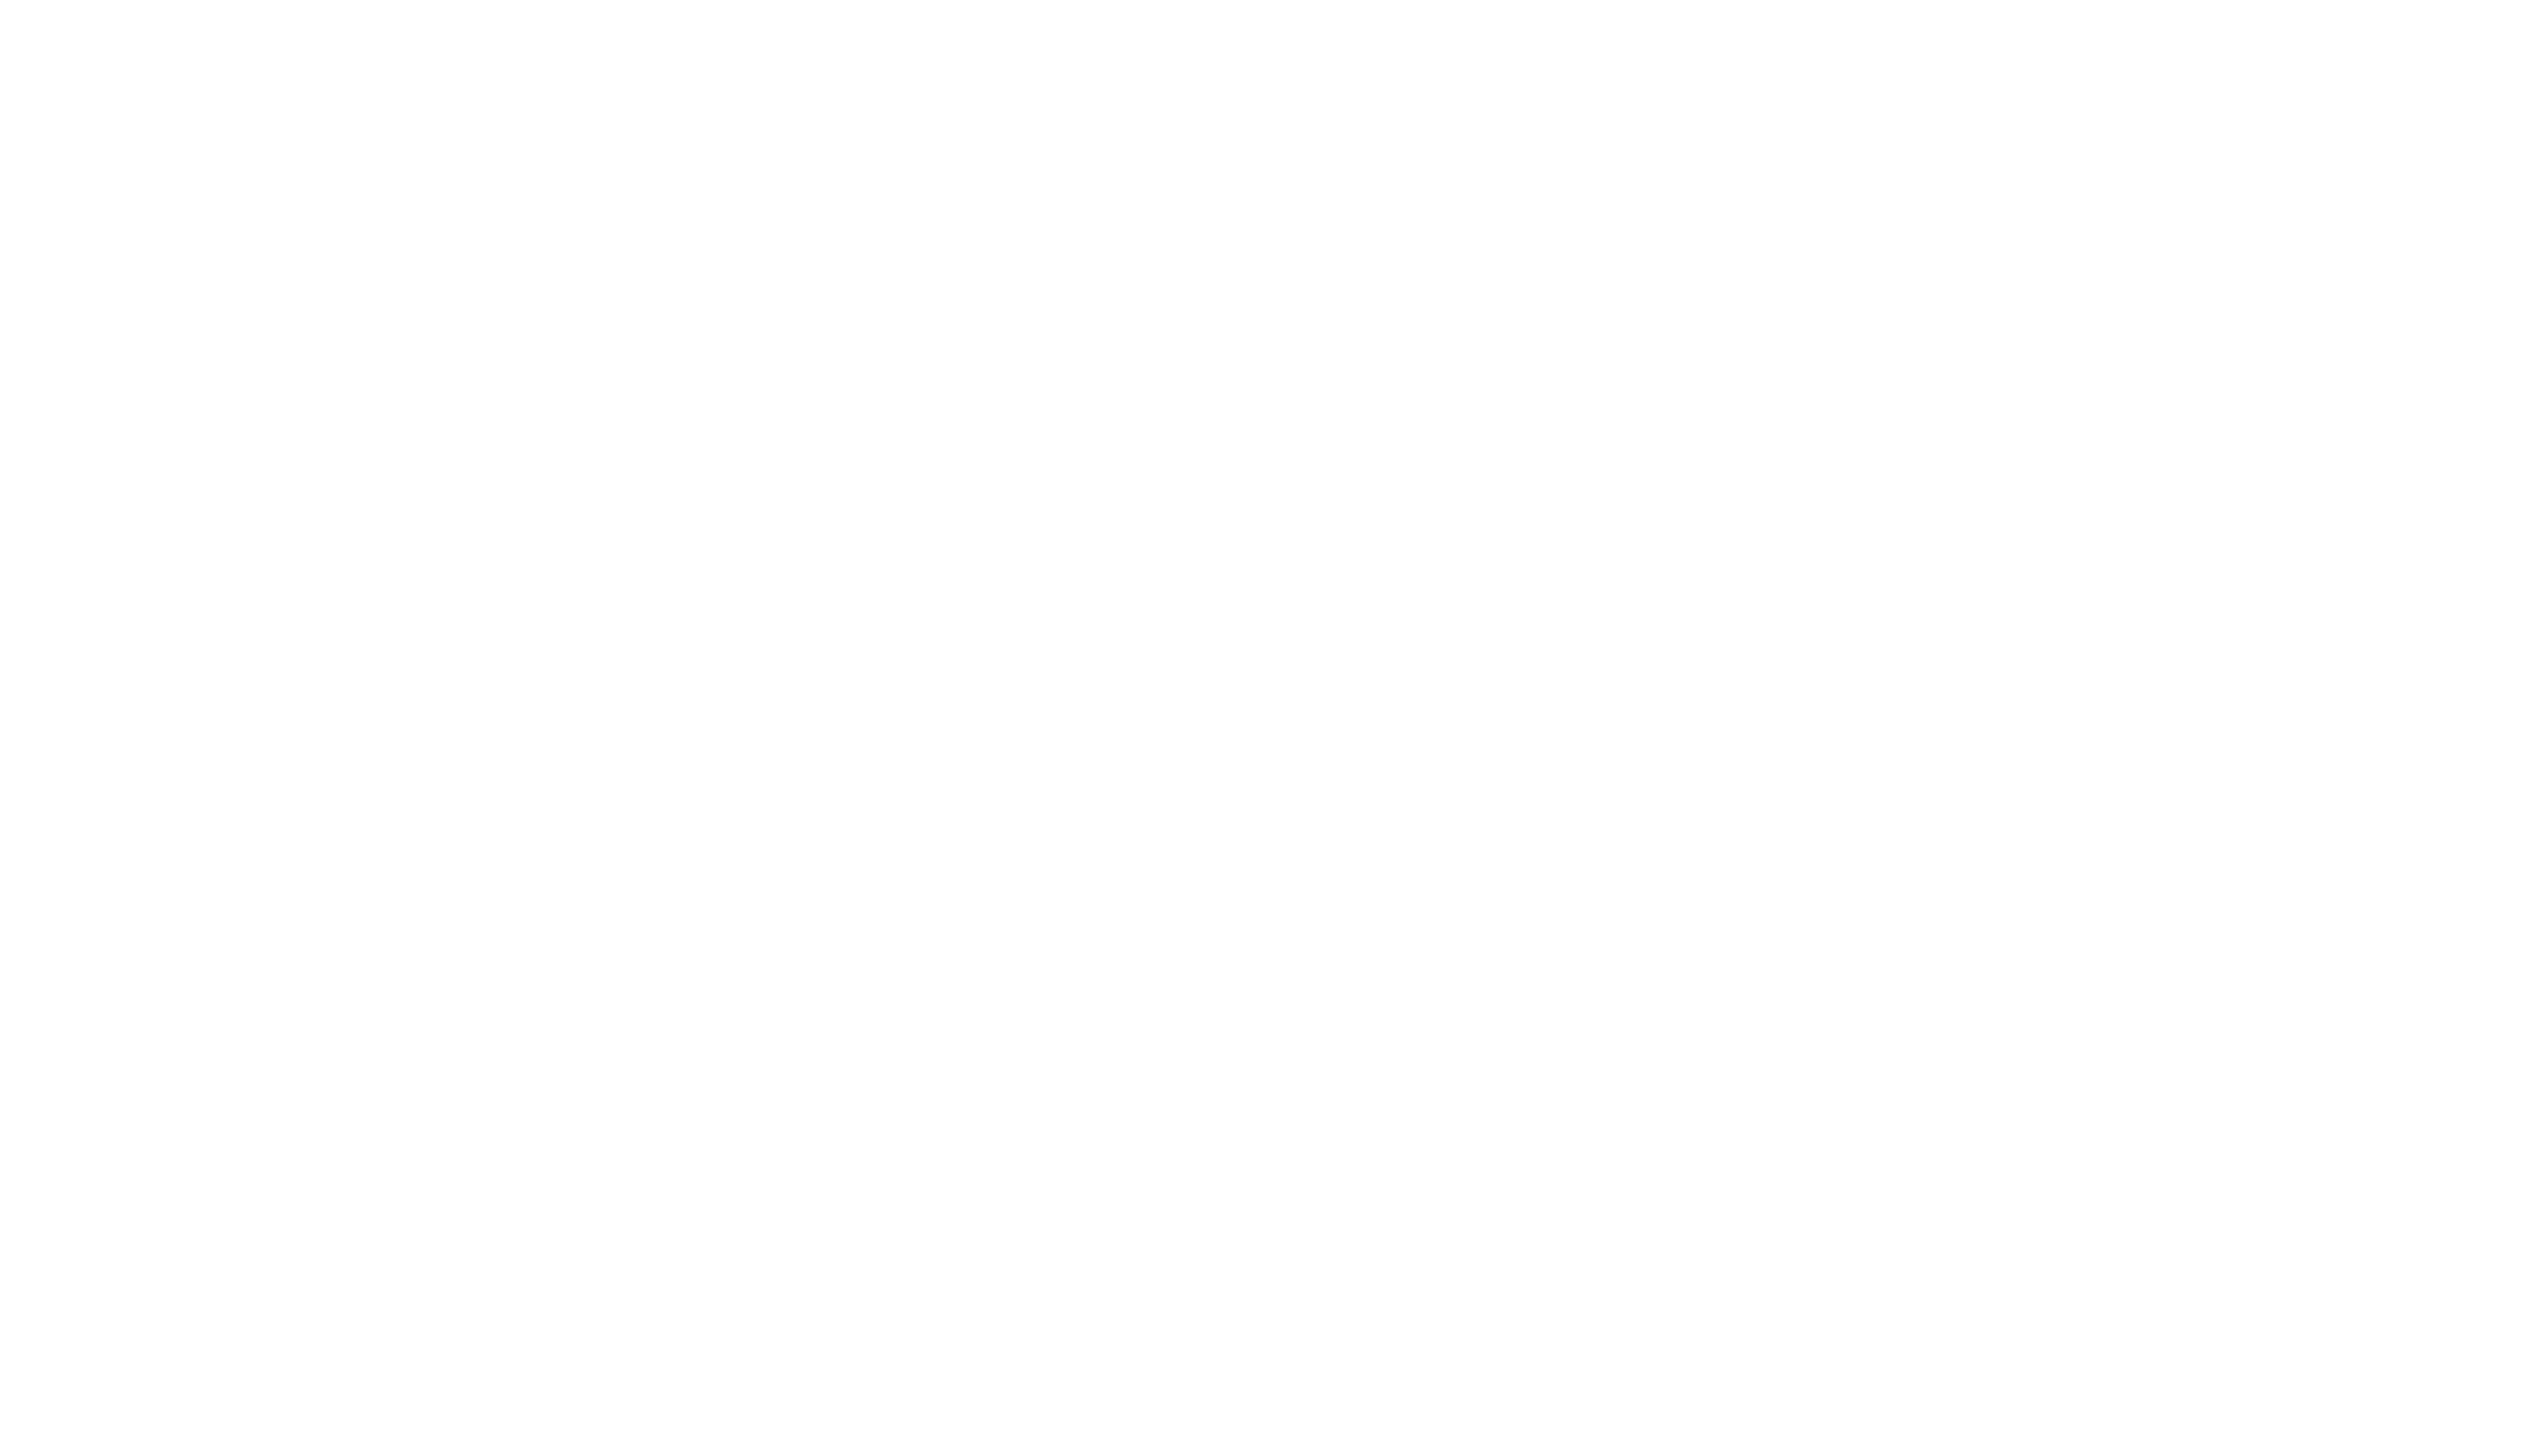 Error - 404